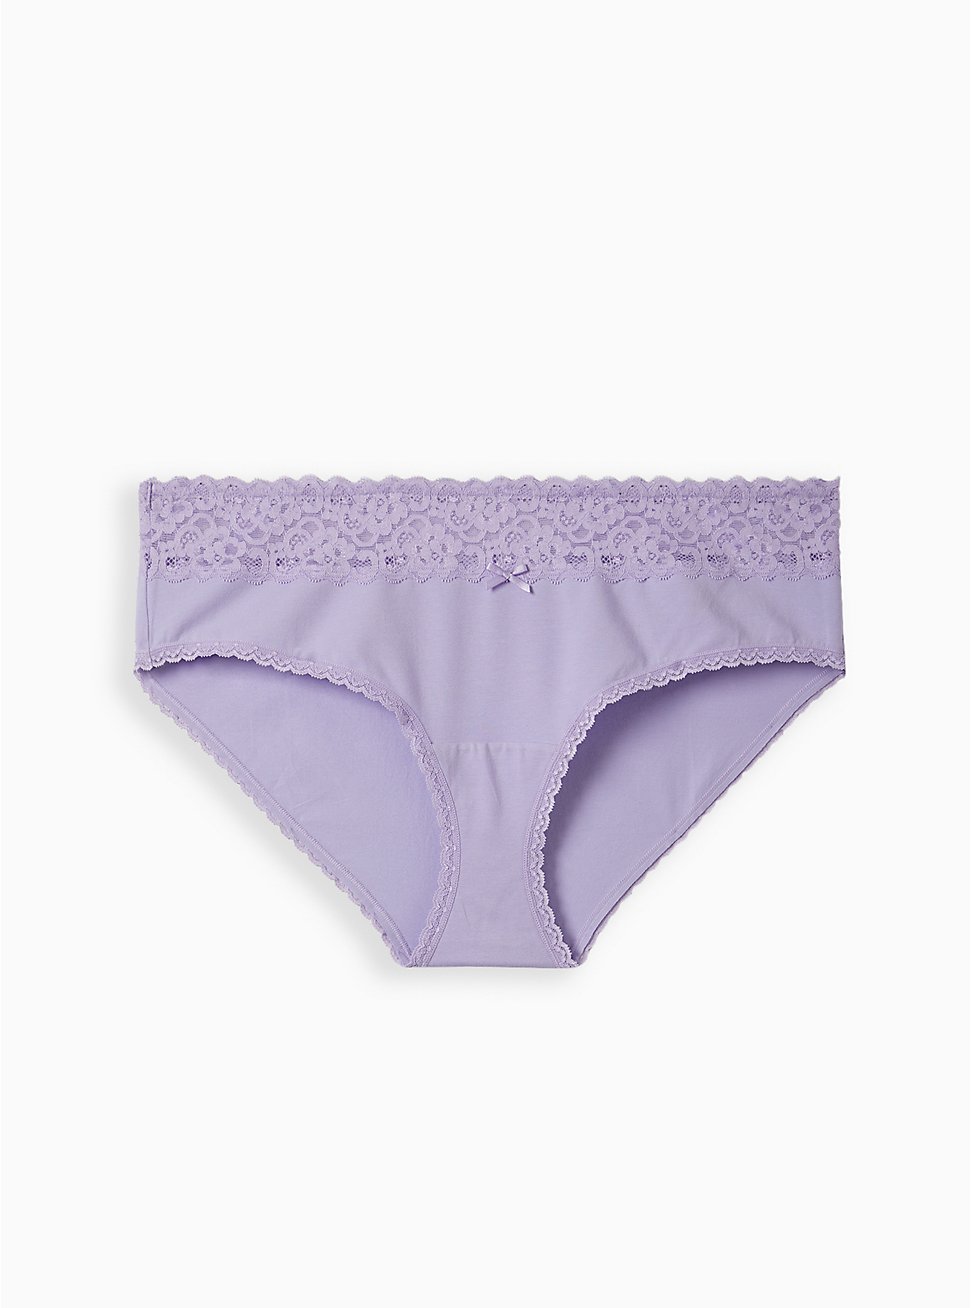 Plus Size Wide Lace Hipster Panty - Cotton Lavender, LAVENDER, hi-res